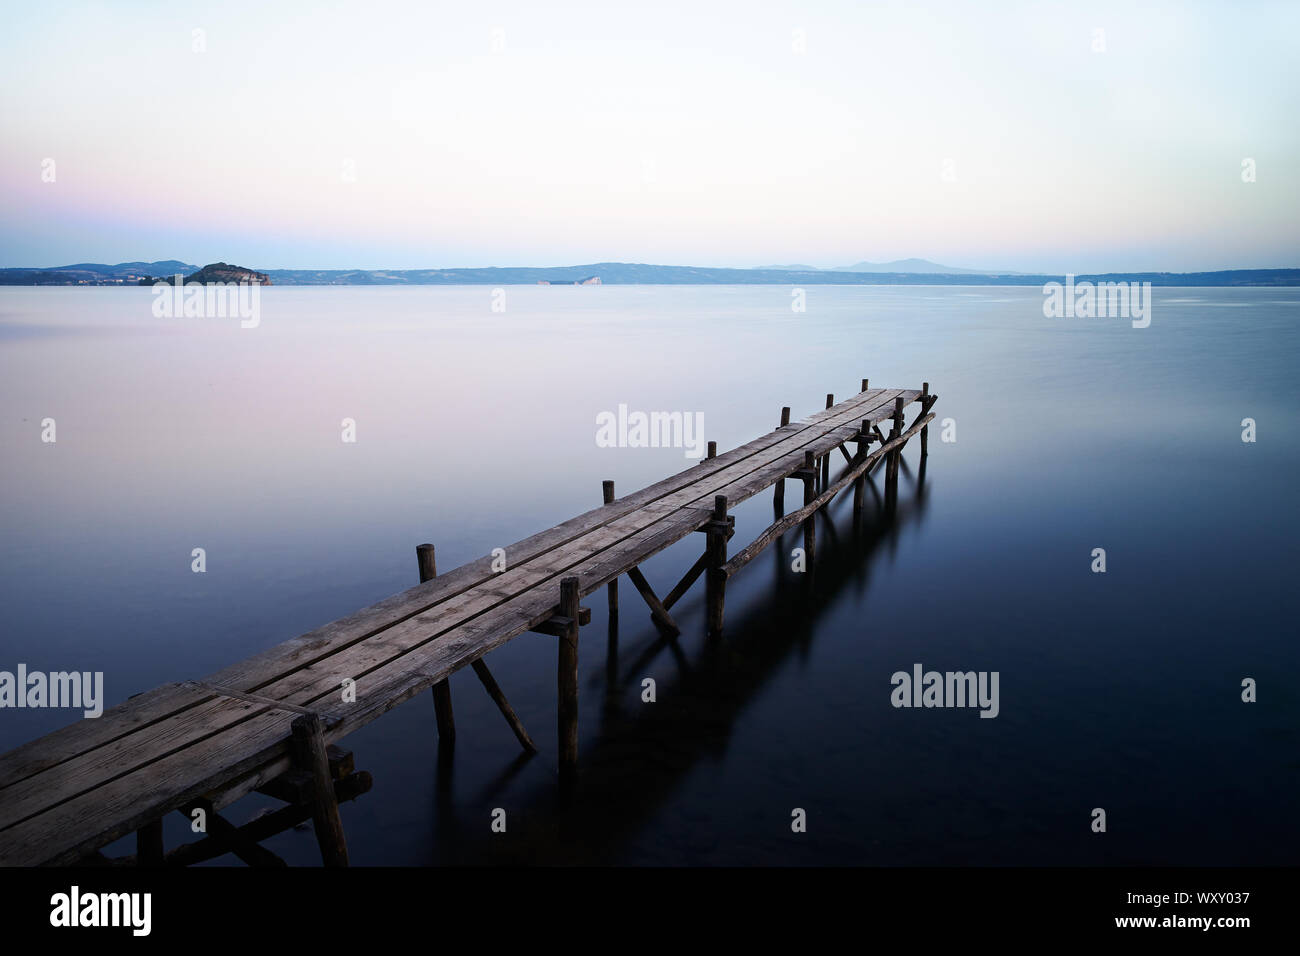 Una lunga esposizione di un paesaggio con un vecchio molo in legno sulle acque del lago di Bolsena Foto Stock